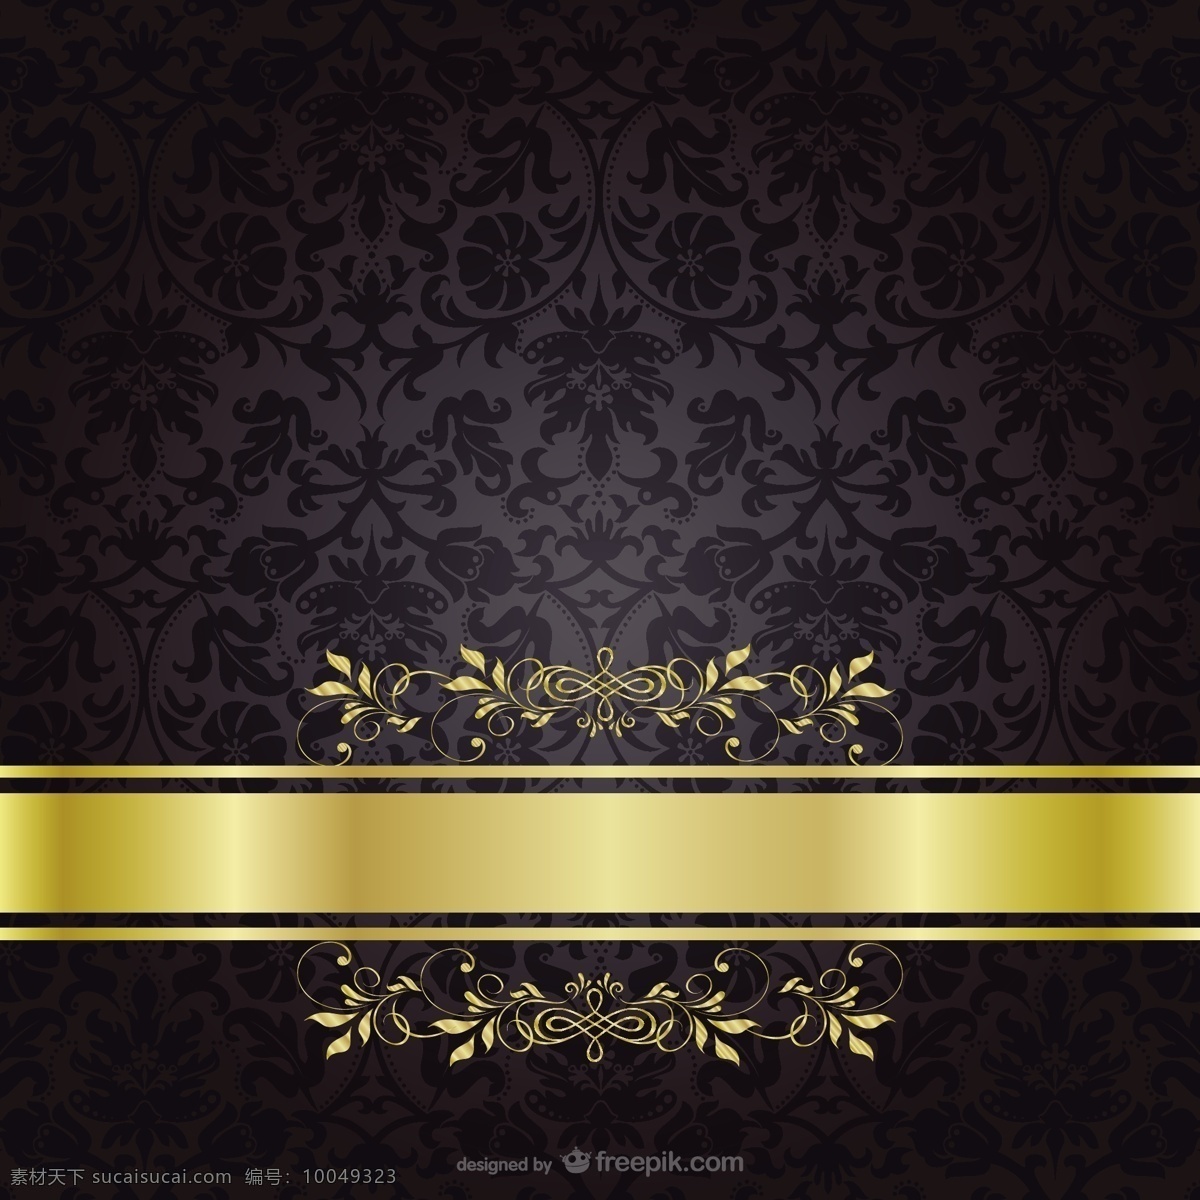 暗金色模板 背景 花卉 邀请 卡片 金 模板 花卉背景 壁纸 布局 黑色背景 奢侈品 黑色 金色 光泽 装饰